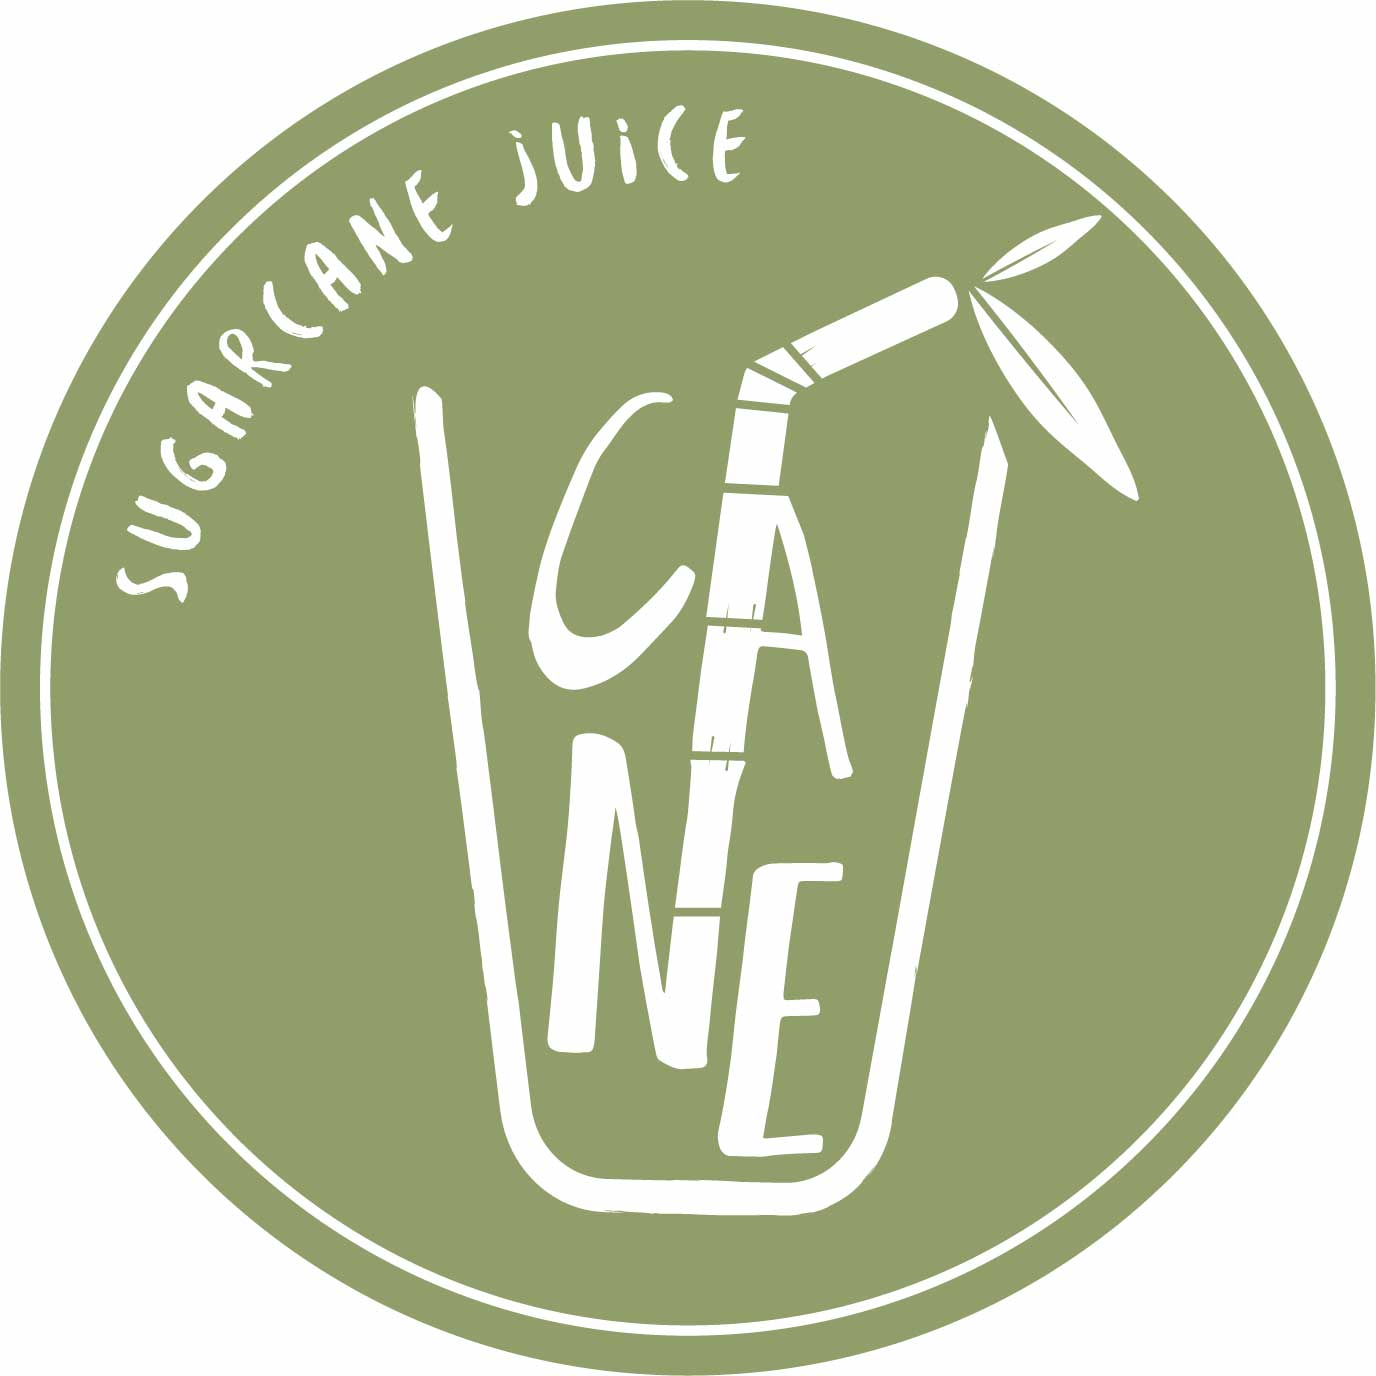 Cane-Sugarcane-Juice